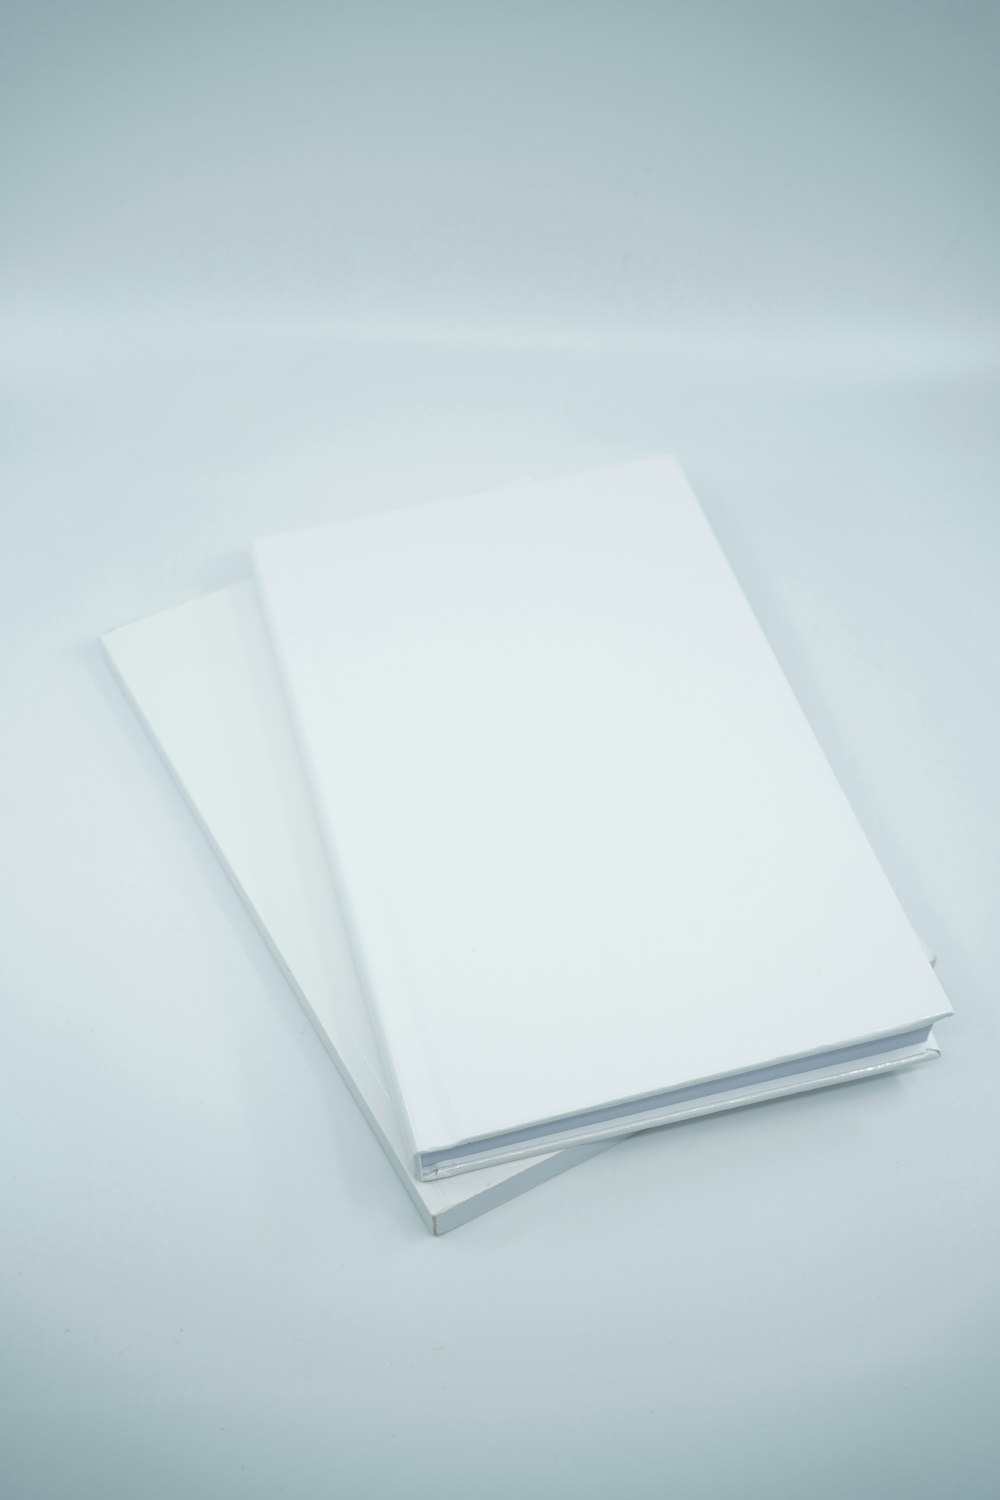 Papel de impresora blanco sobre superficie blanca